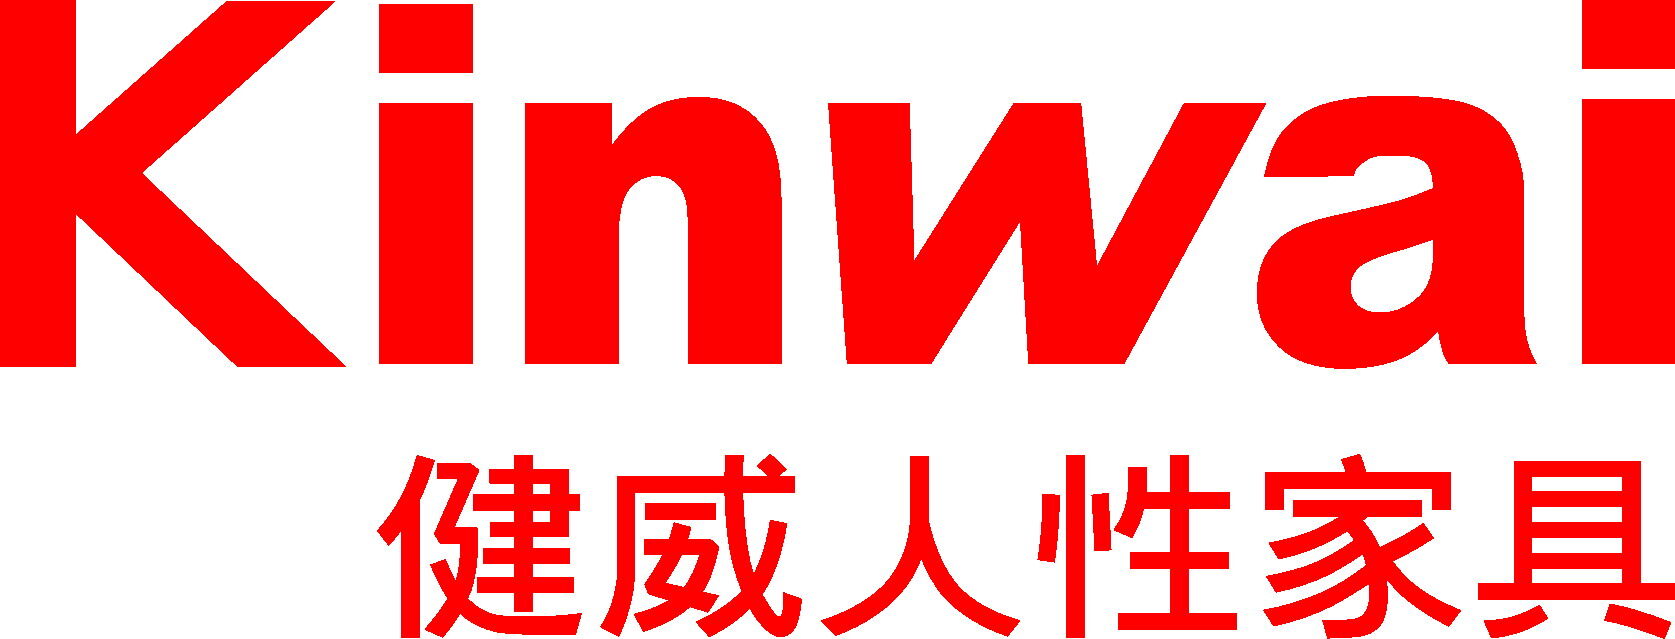 江门健威企业集团logo